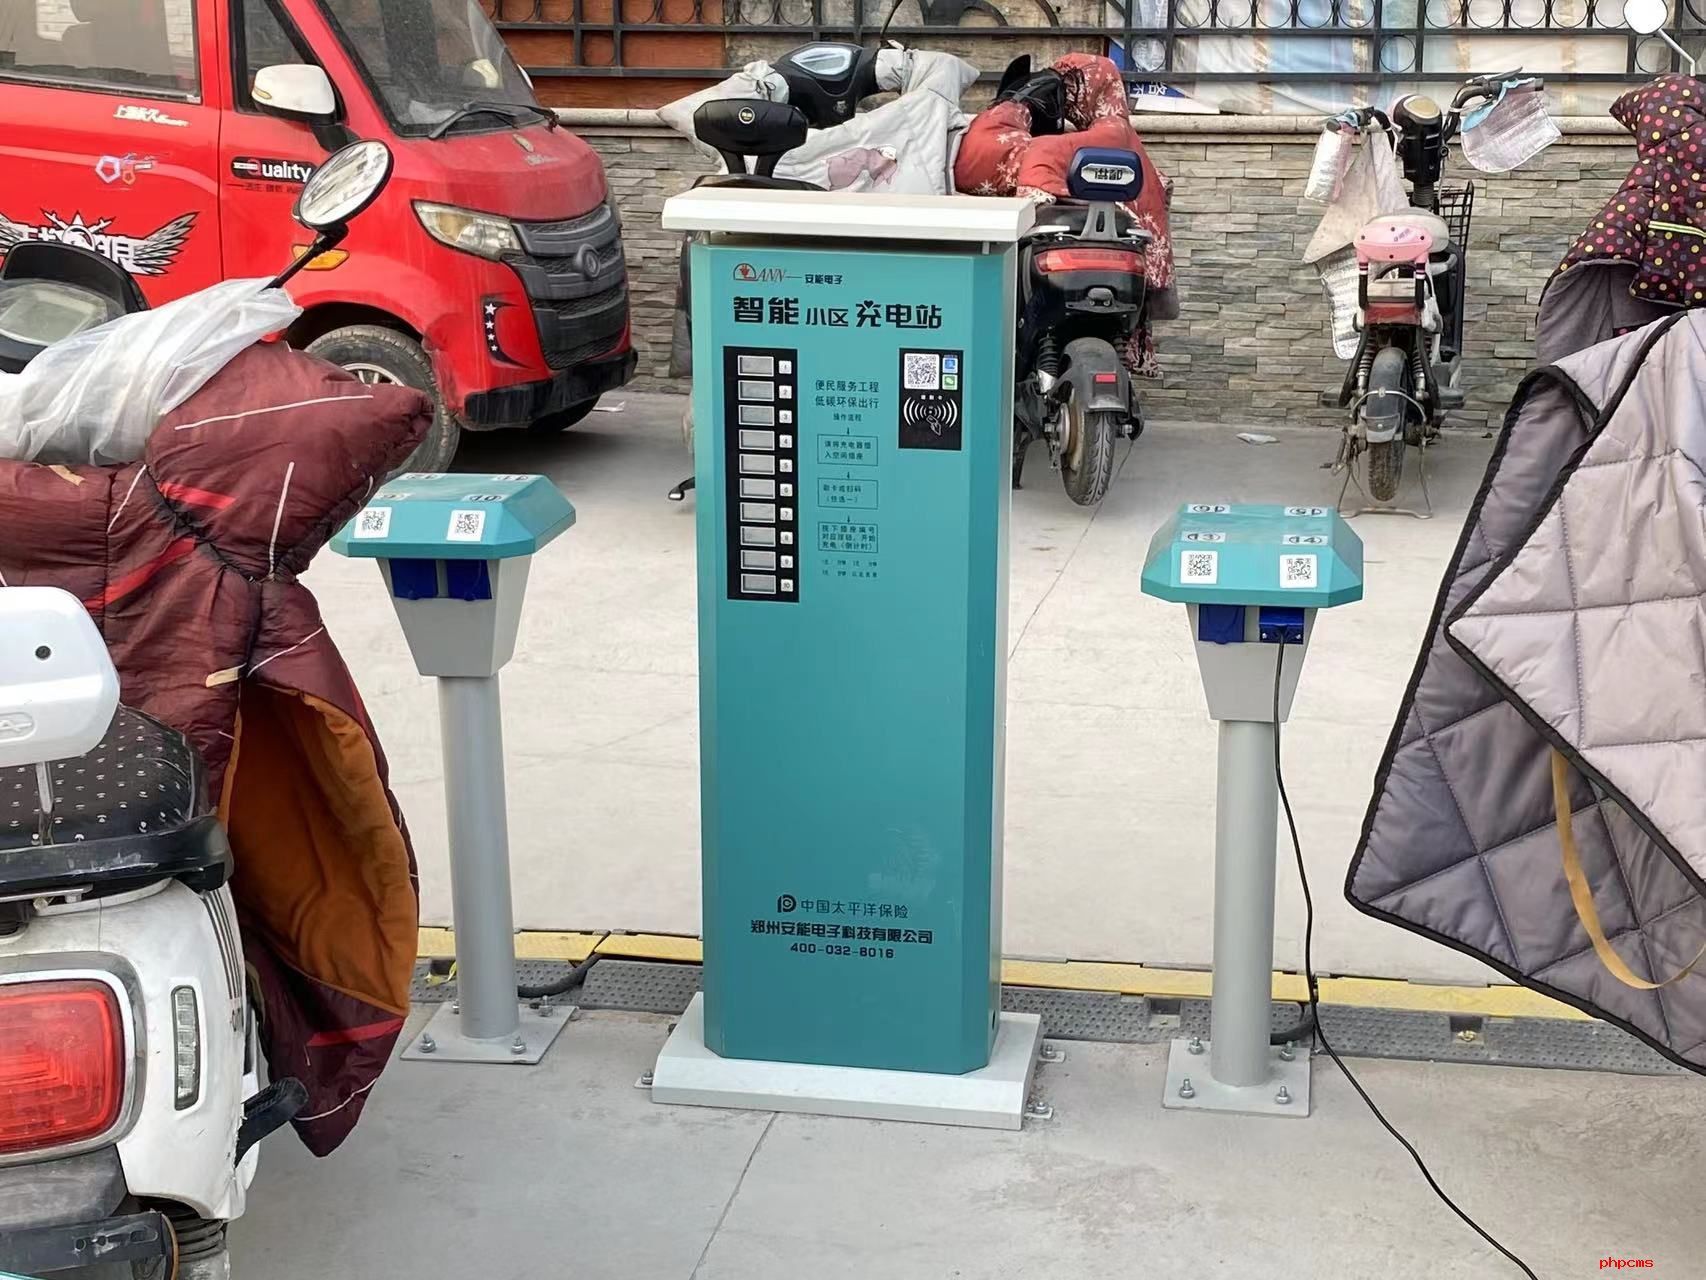 宝马新电动汽车平台将改用下一代低成本电池